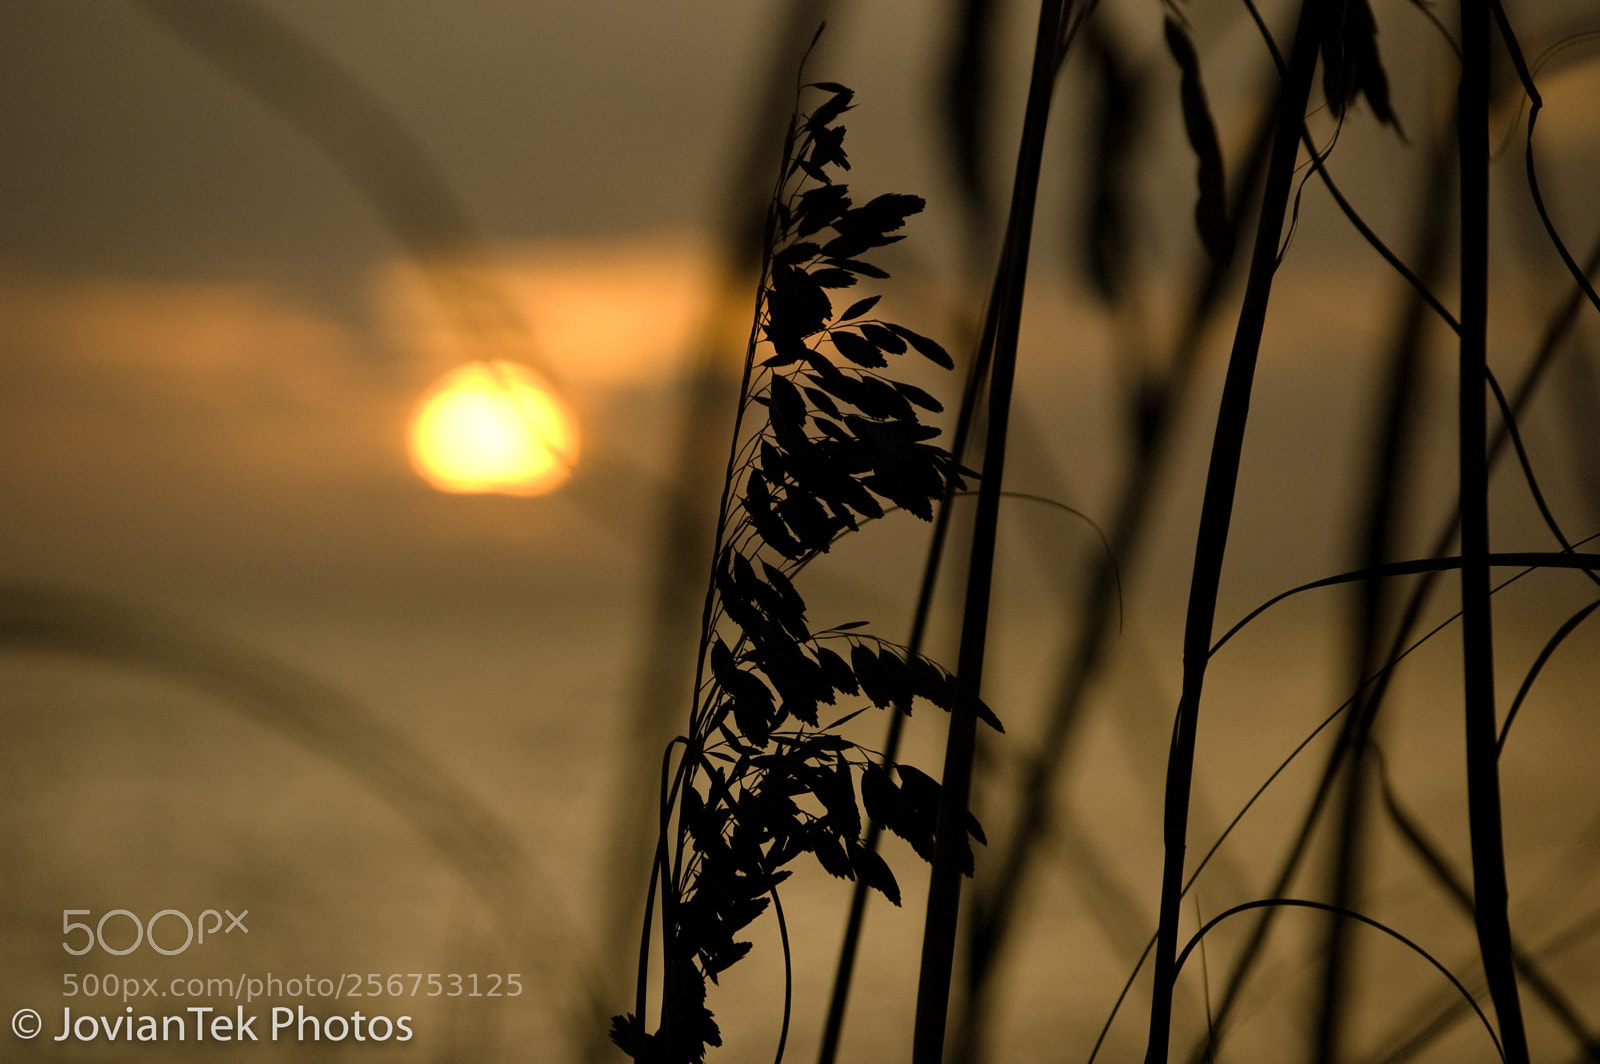 Nikon D70s sample photo. Sunset nokomis beach photography